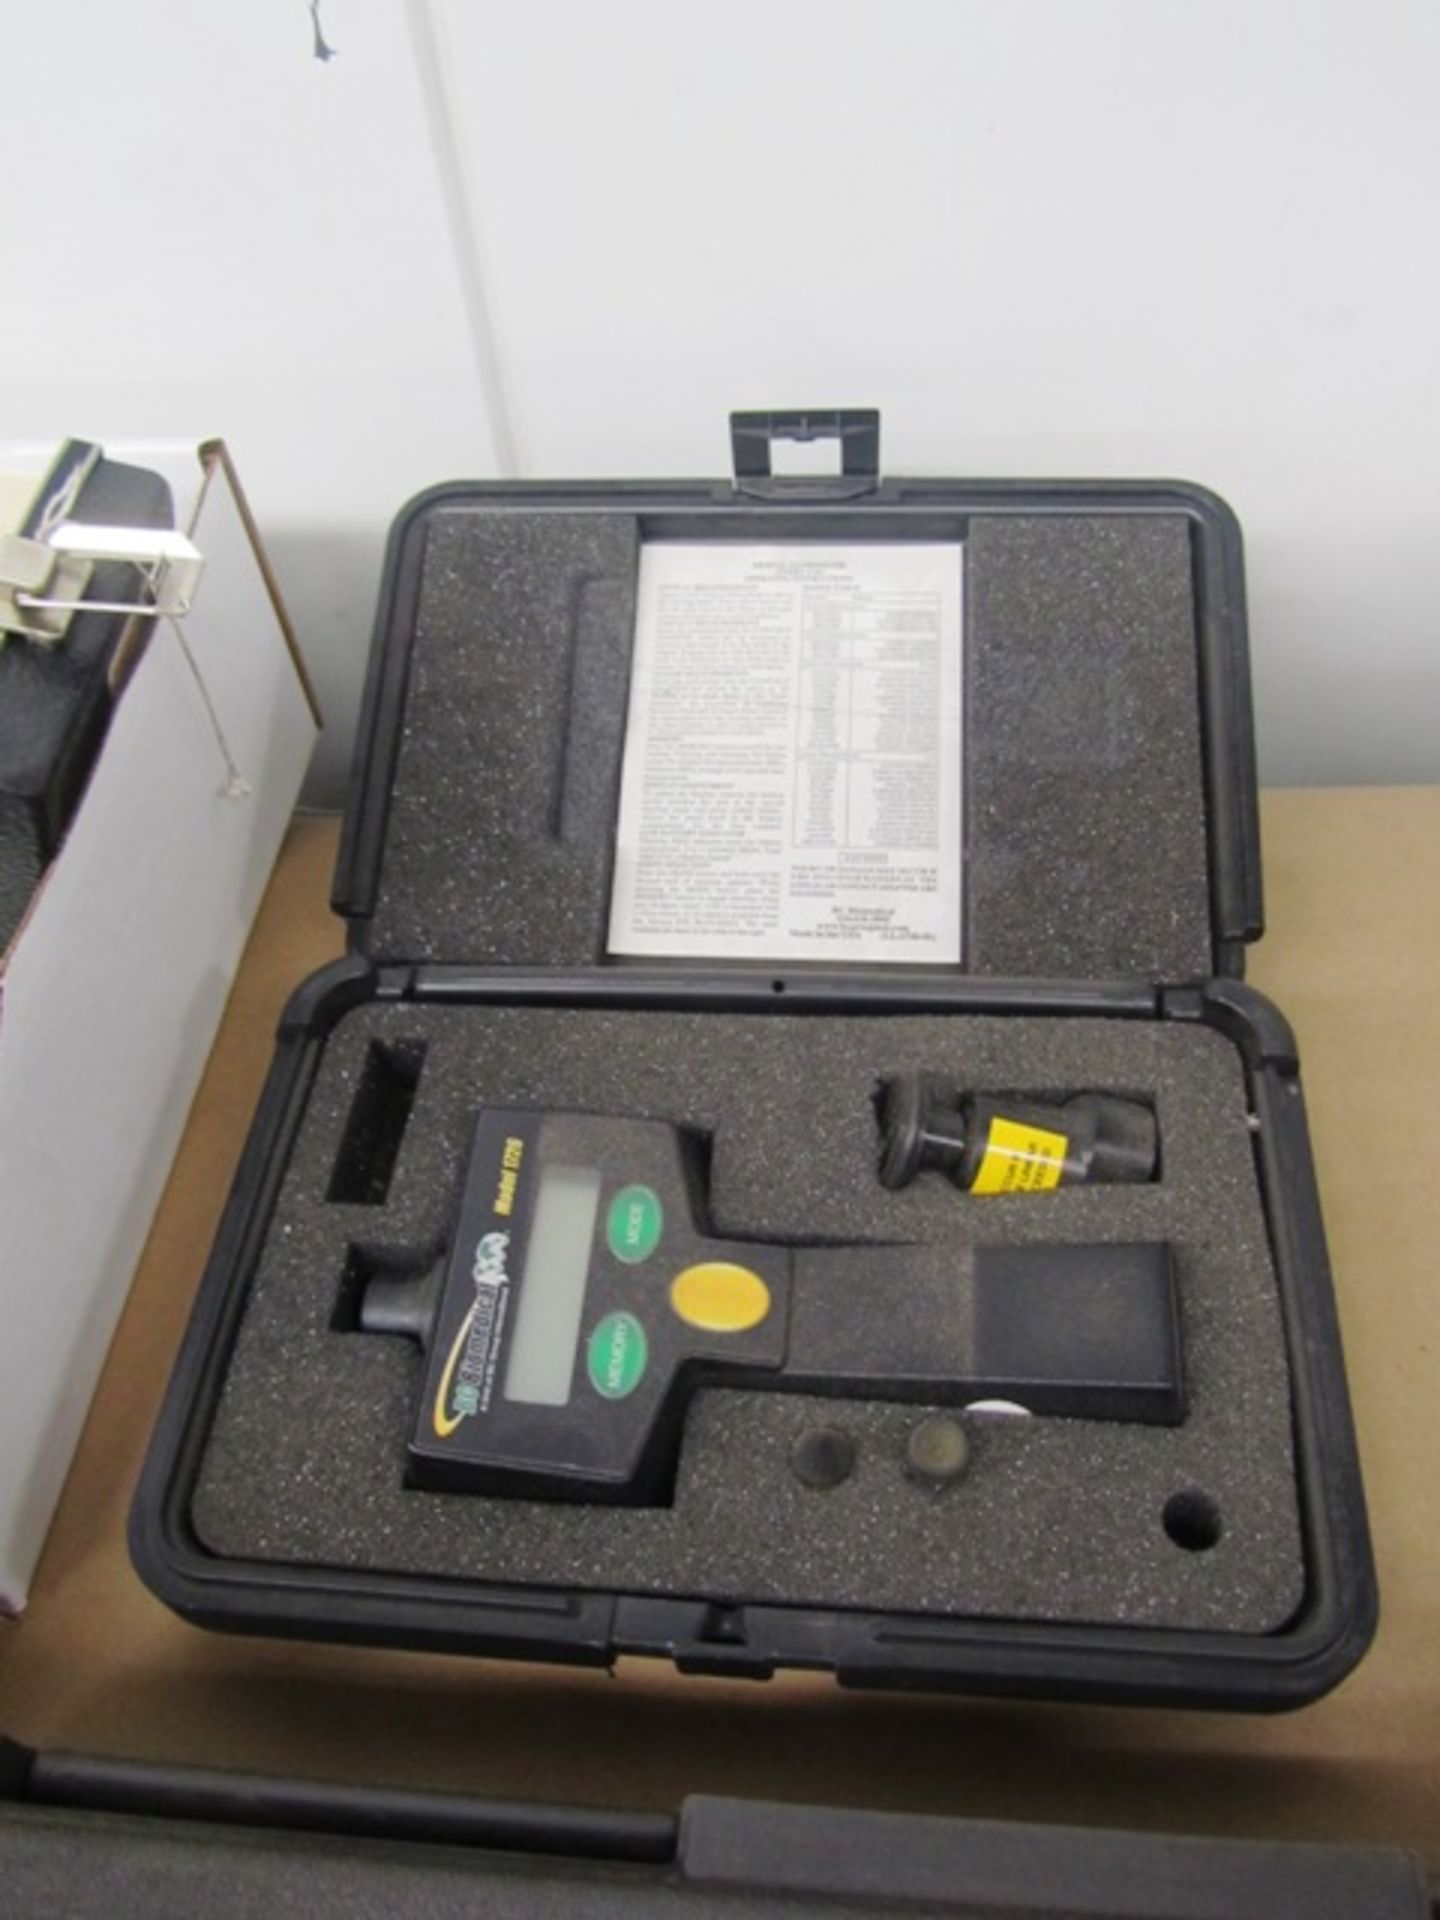 BC Biomedical Model 1726 Digital Tachometer